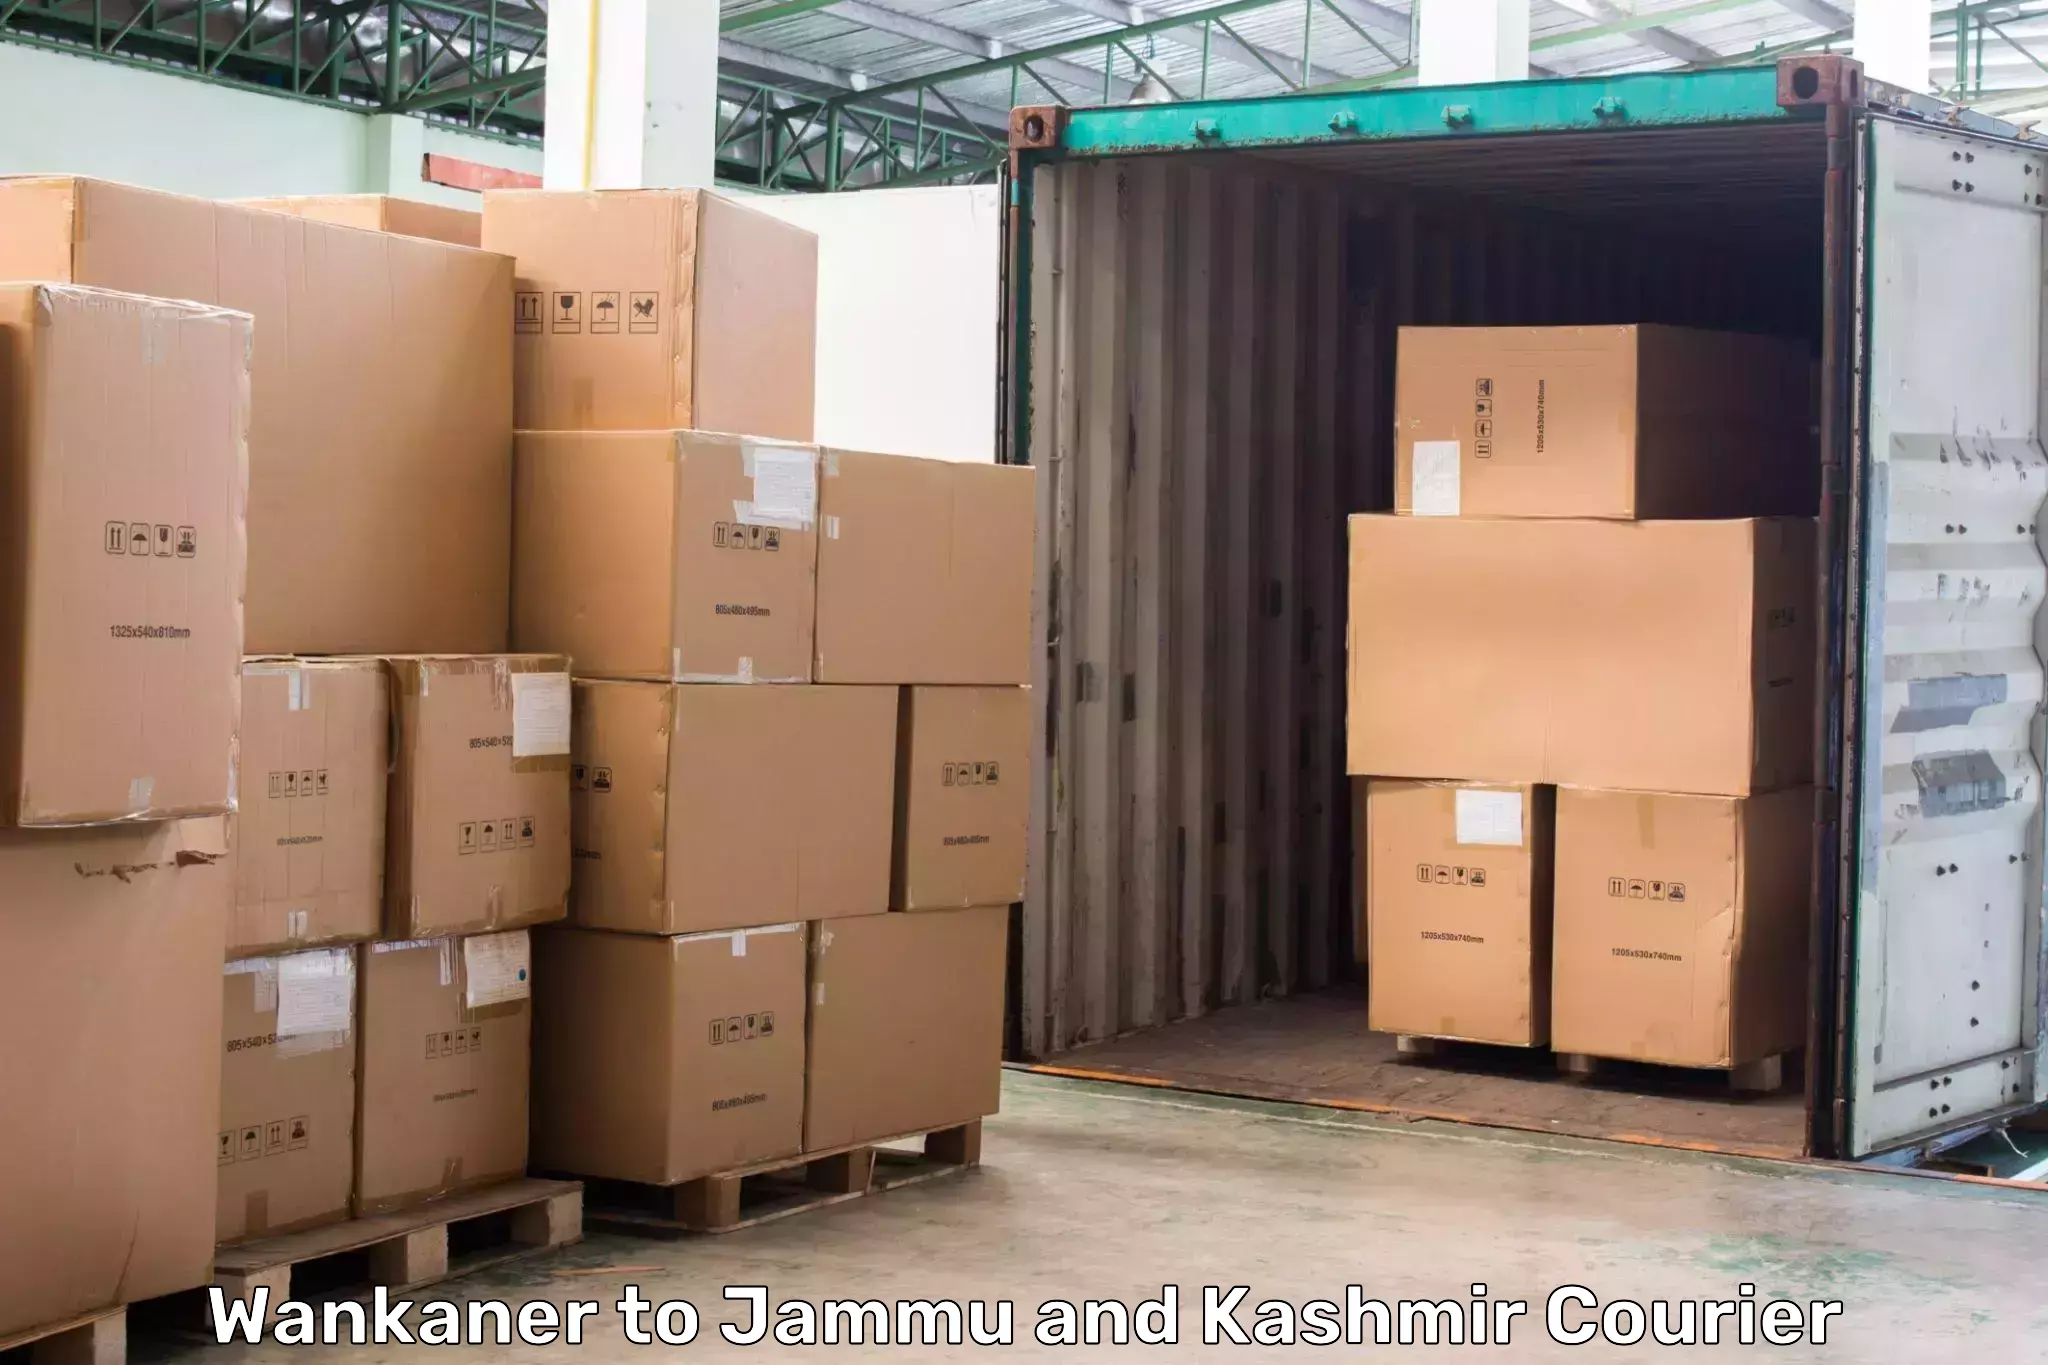 Express courier capabilities Wankaner to Kishtwar